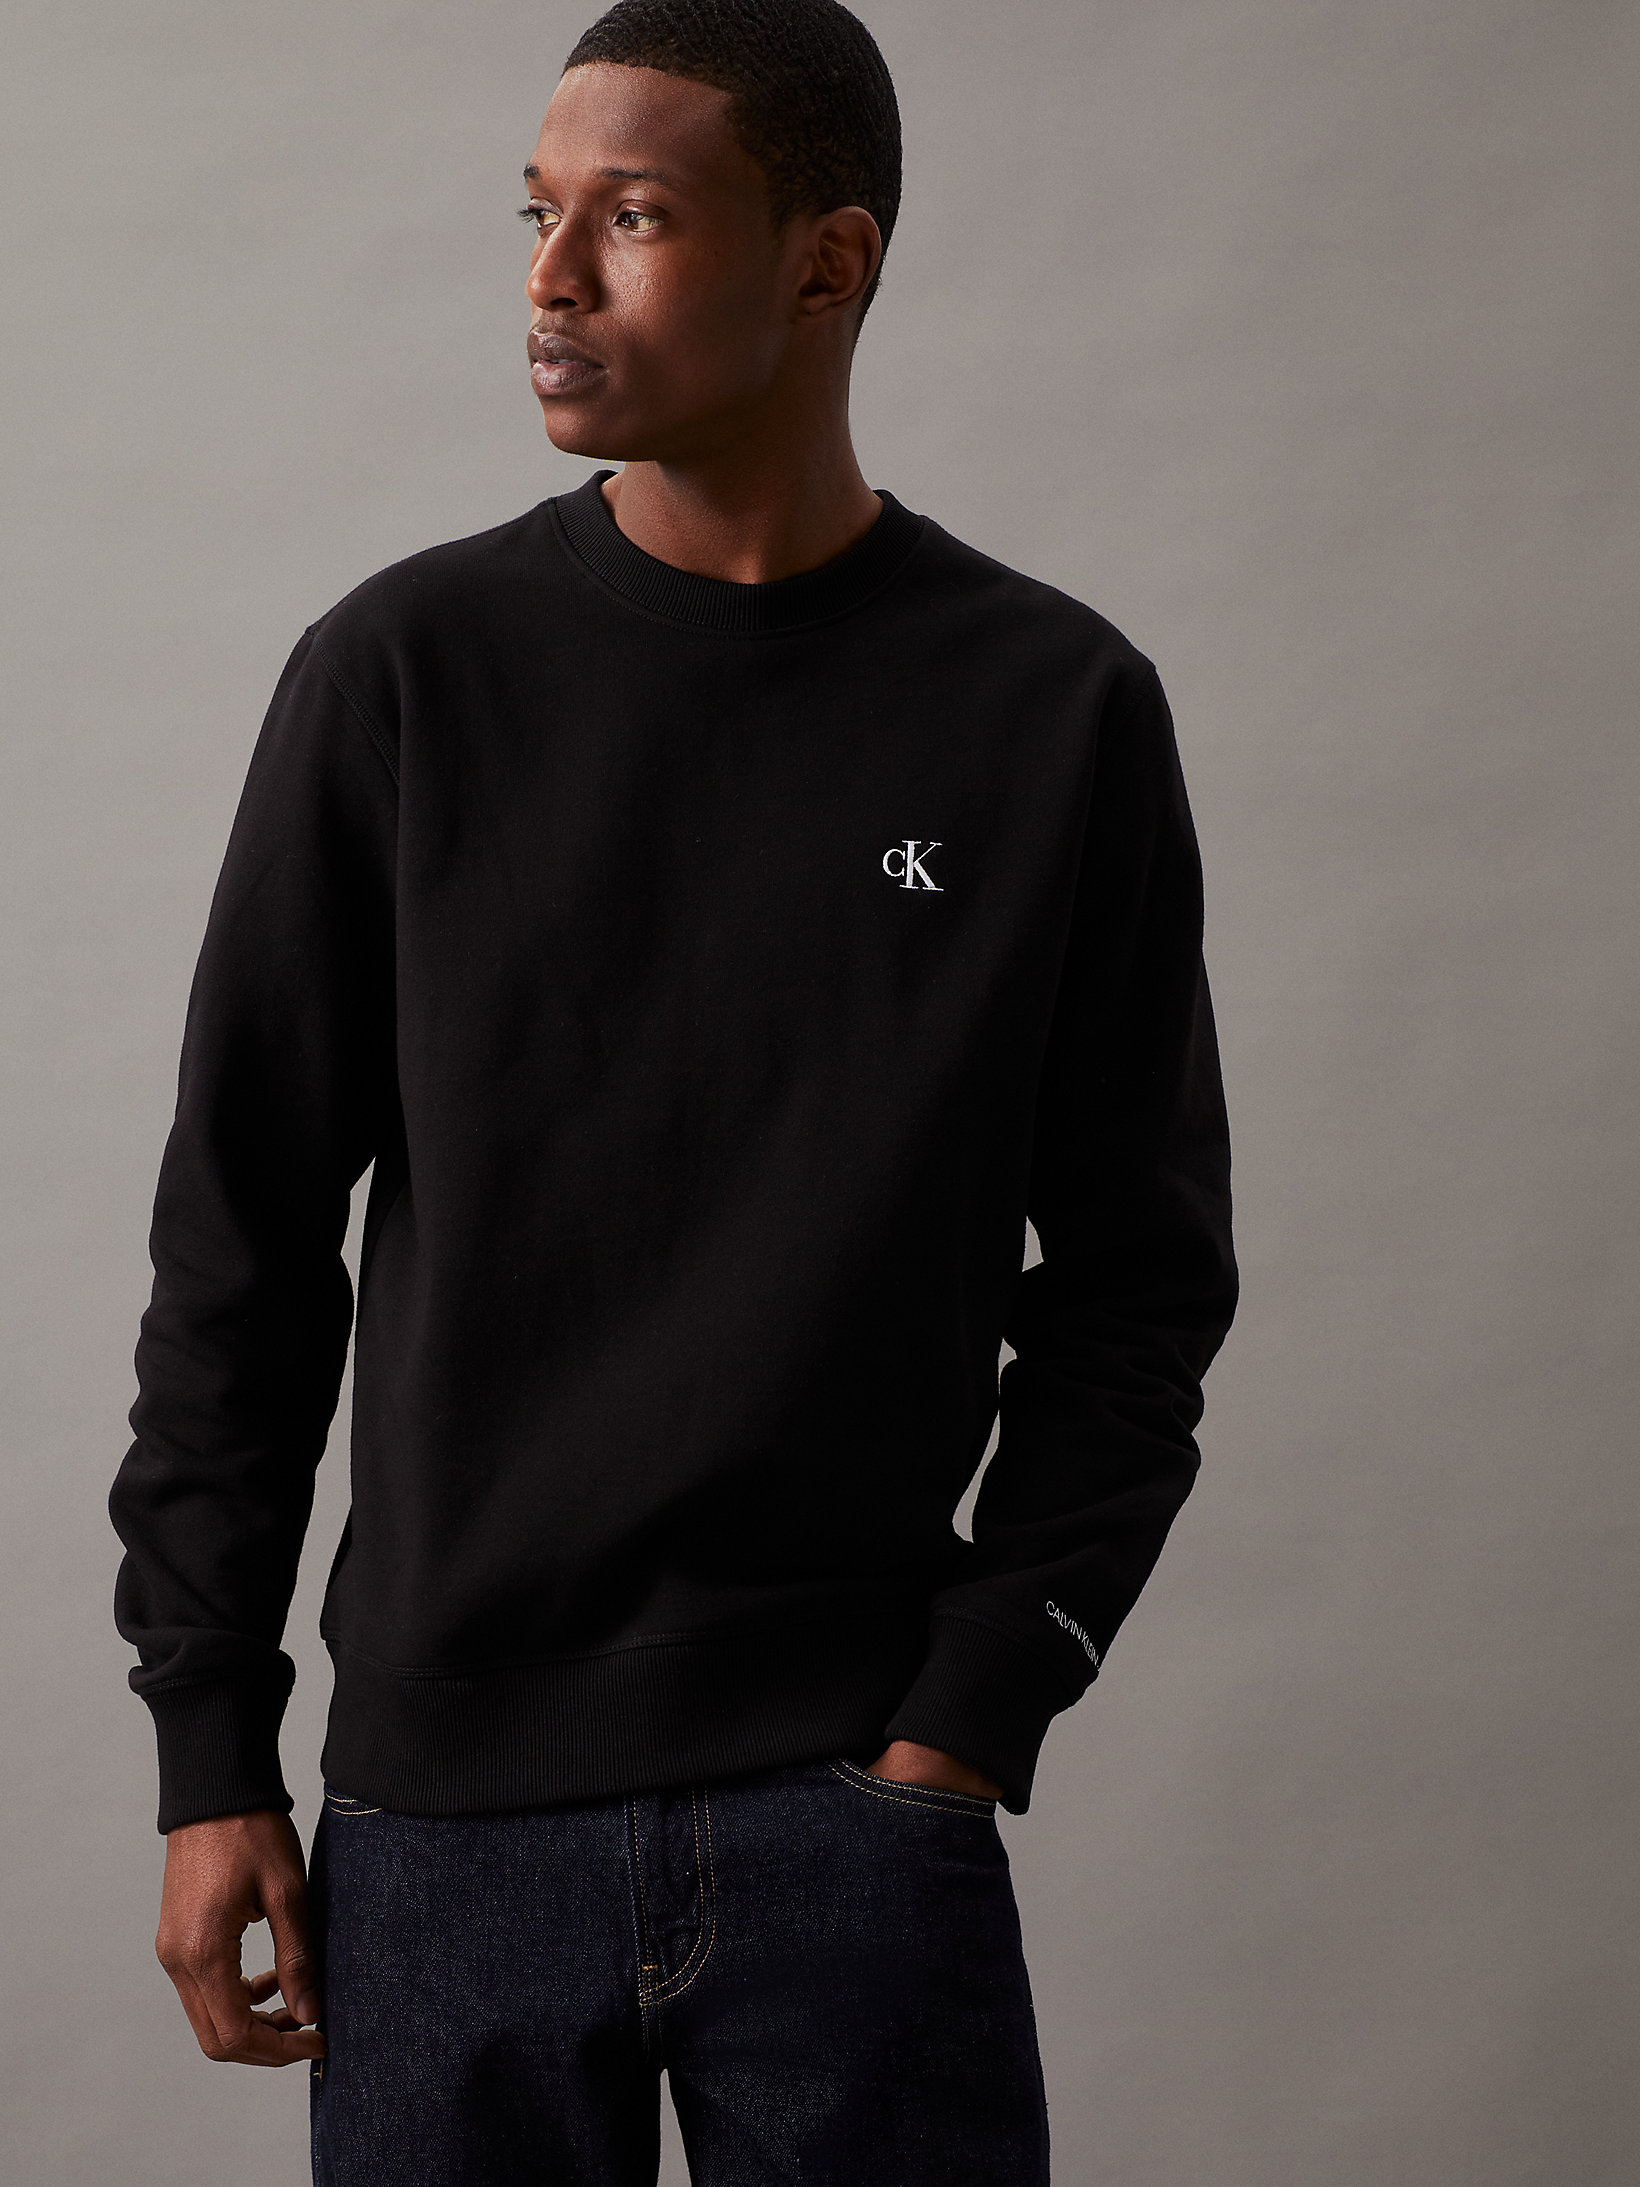 CK Black Cotton Blend Fleece Sweatshirt undefined men Calvin Klein